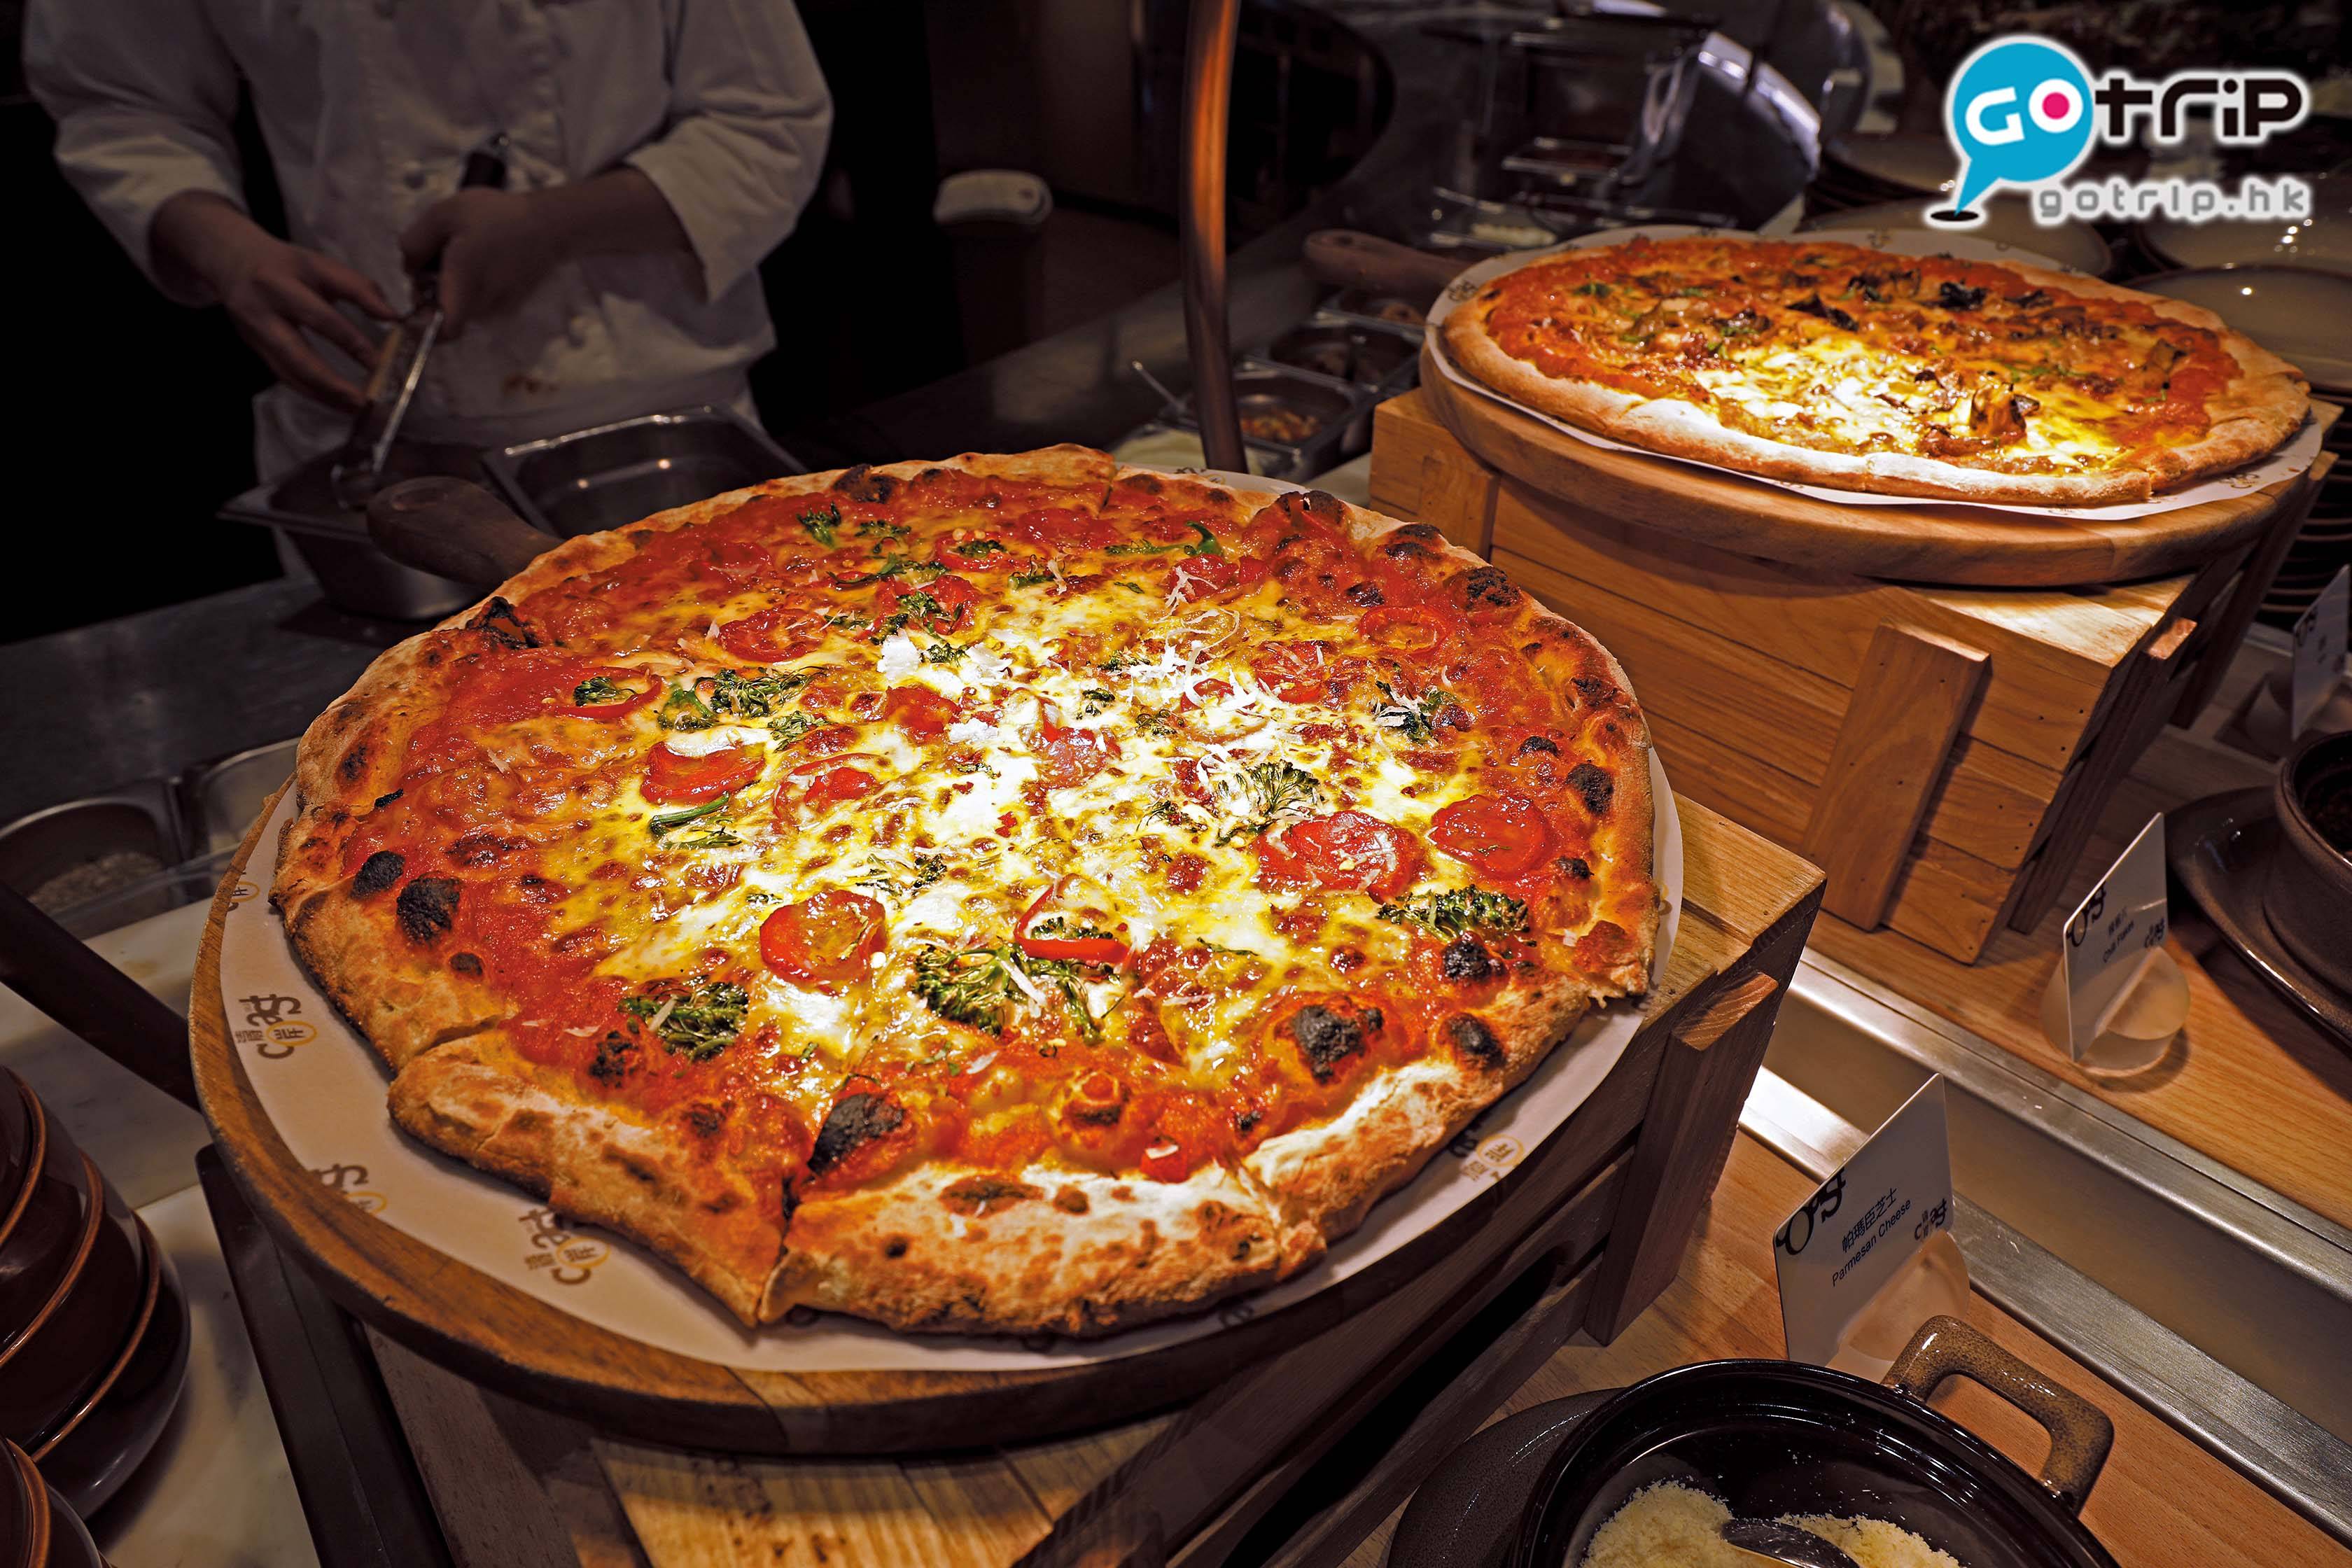 澳門自助餐2019 每日都有2款pizzas提供，而每日都口味不同。記者當日的是芝士辣肉腸及烤野菌百里香薄餅。